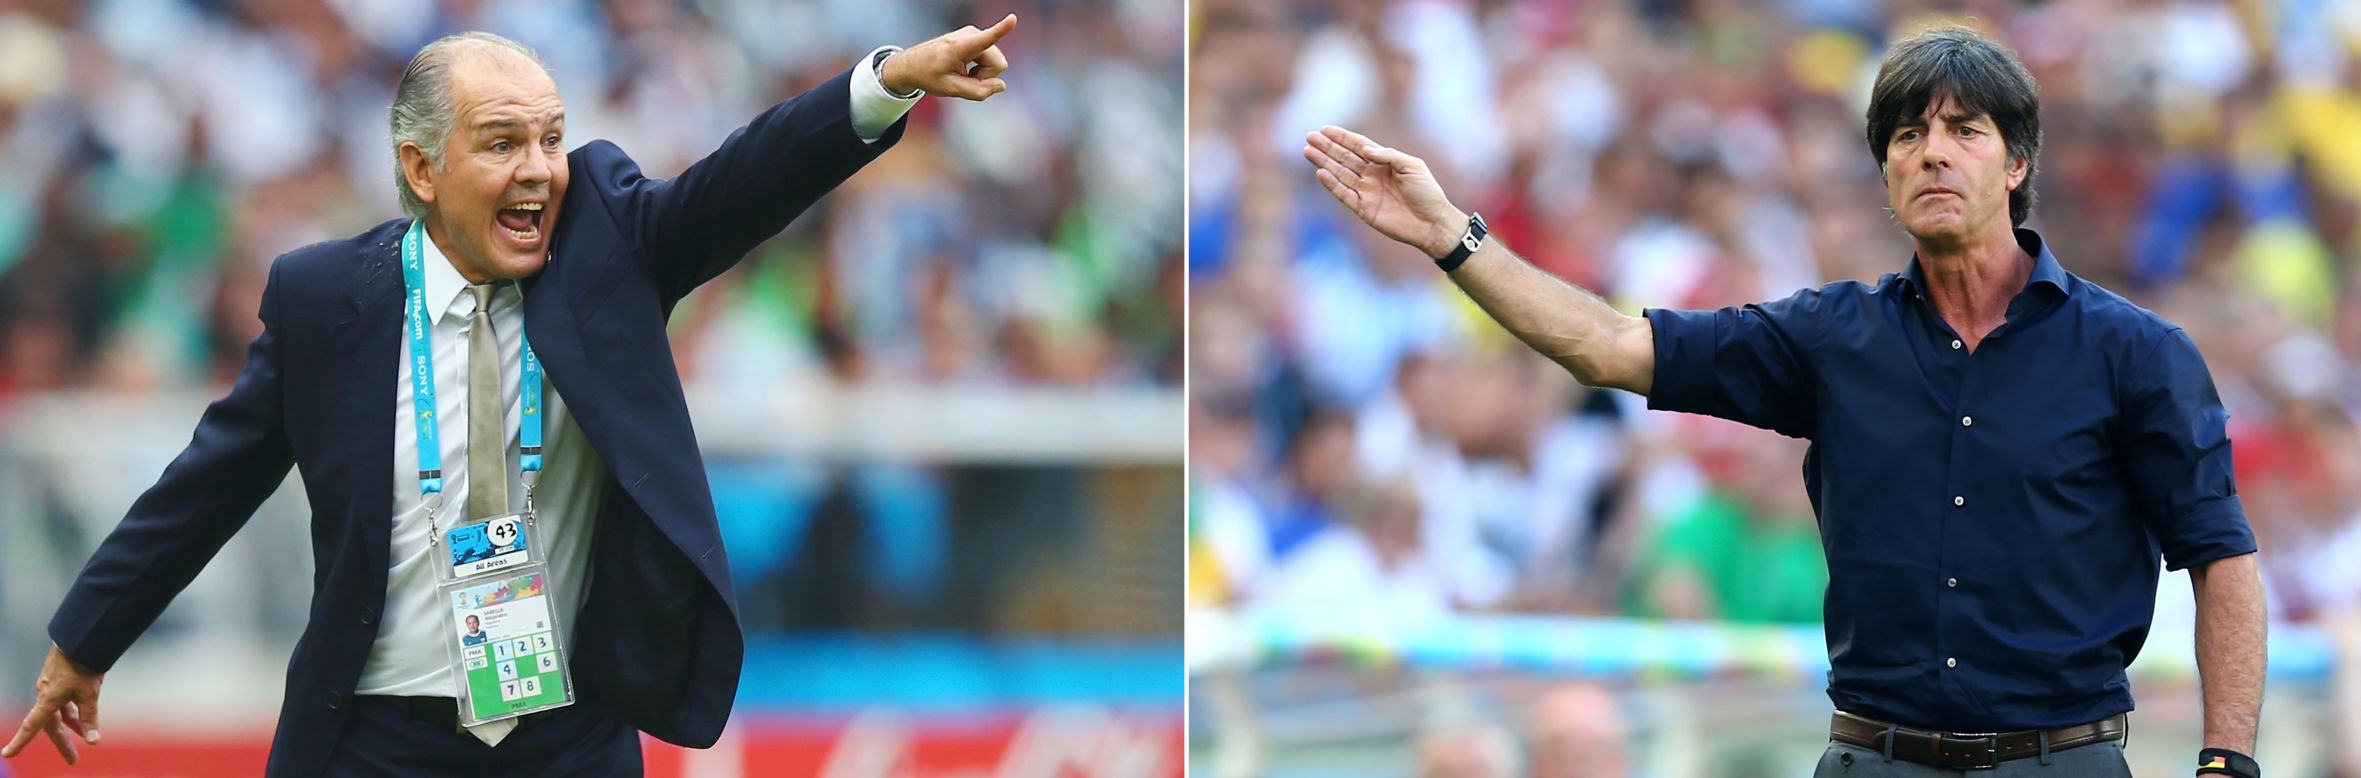 A la izquierda, el entrenador del equipo argentino Alejandro Sabella; a la derecha, el entrenador del equipo alemán Joachim Löw.